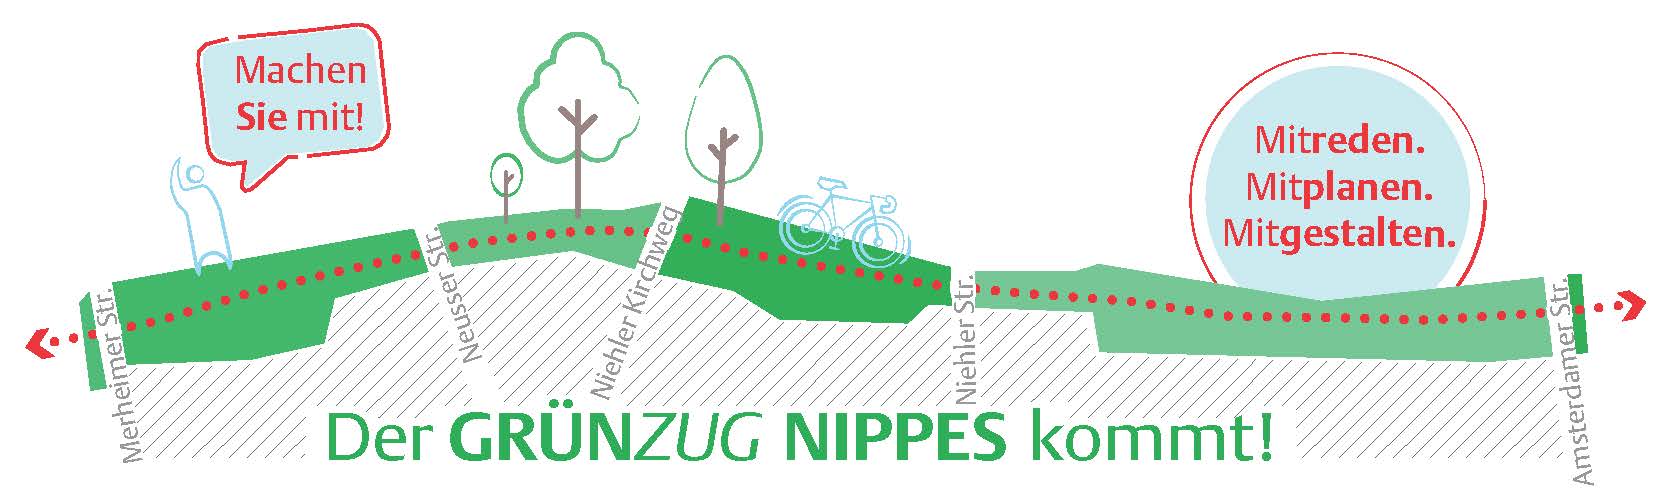 Dargestellt wird das Logo des GrünZug Nippes mit einem Schriftzug sowie Bäumen und einem Radweg.